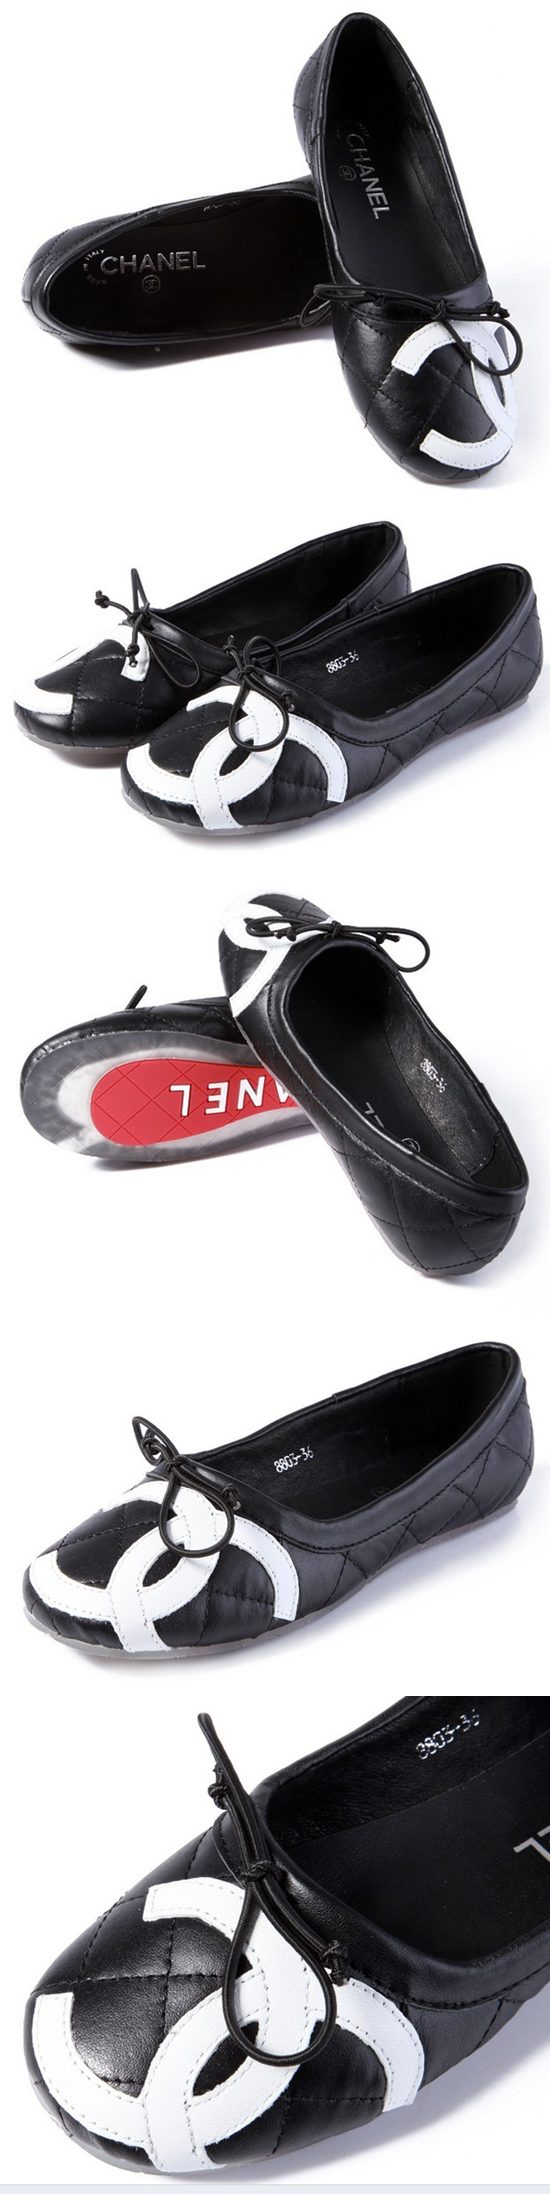 ブランド通販シャネル 2017 靴 CHANEL 靴 コピー c158激安屋-ブランドコピー